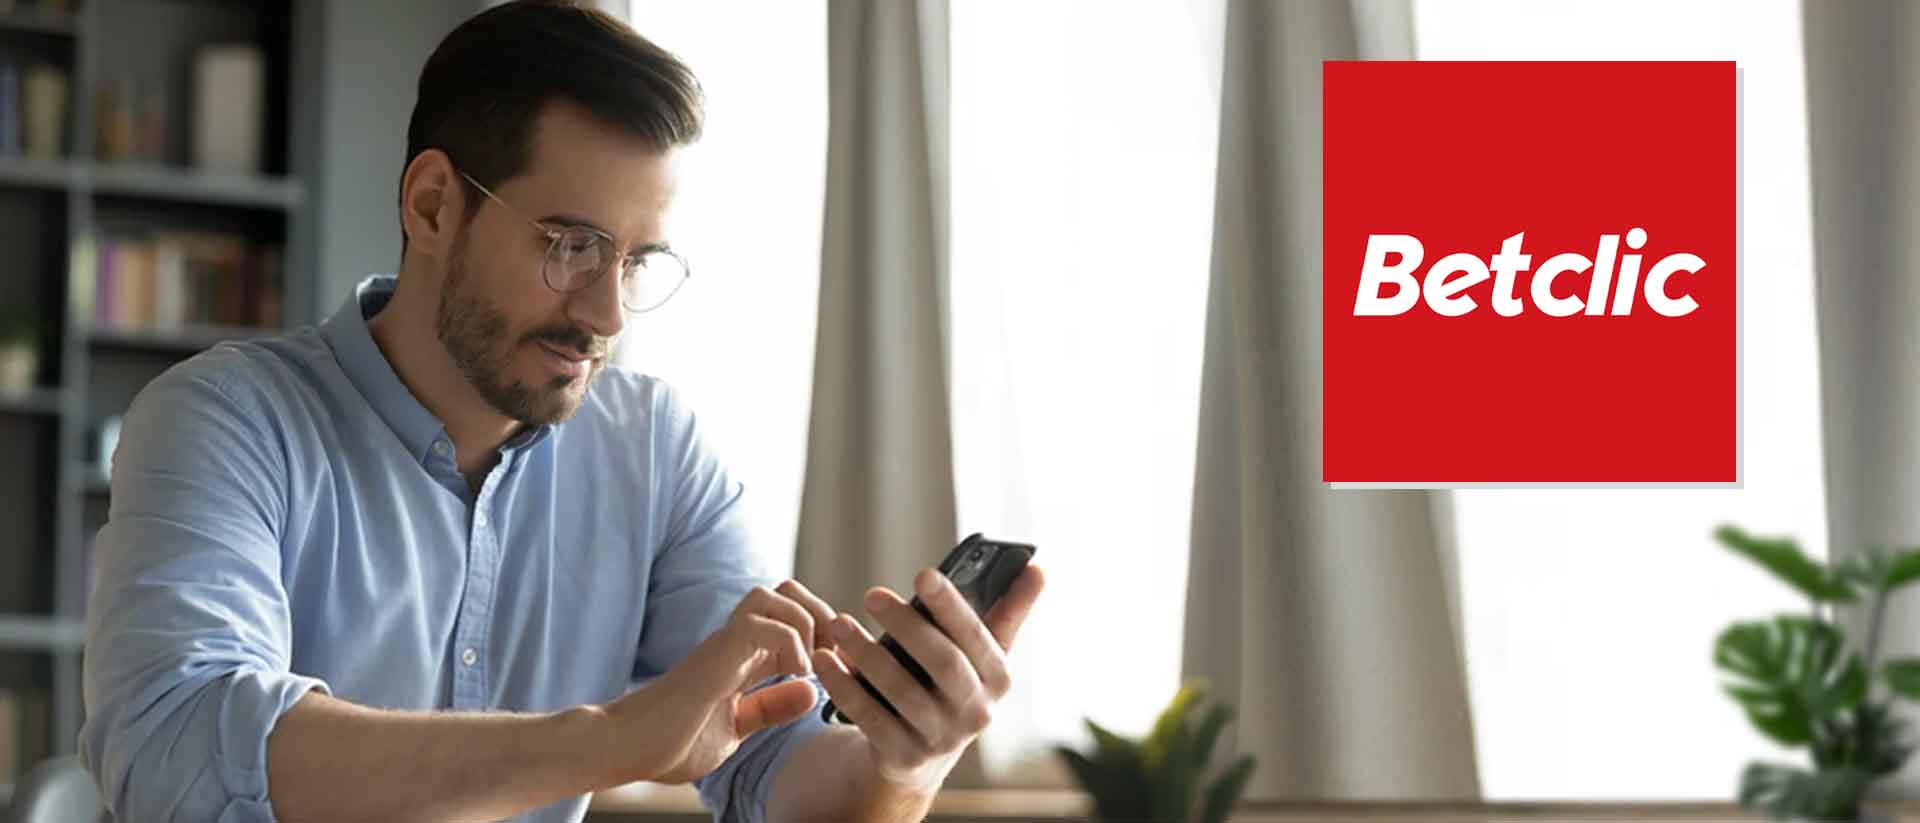 Imagem de homem segurando telemvel com logo da Betclic app colado ao lado direito em tons de branco e vermelho.